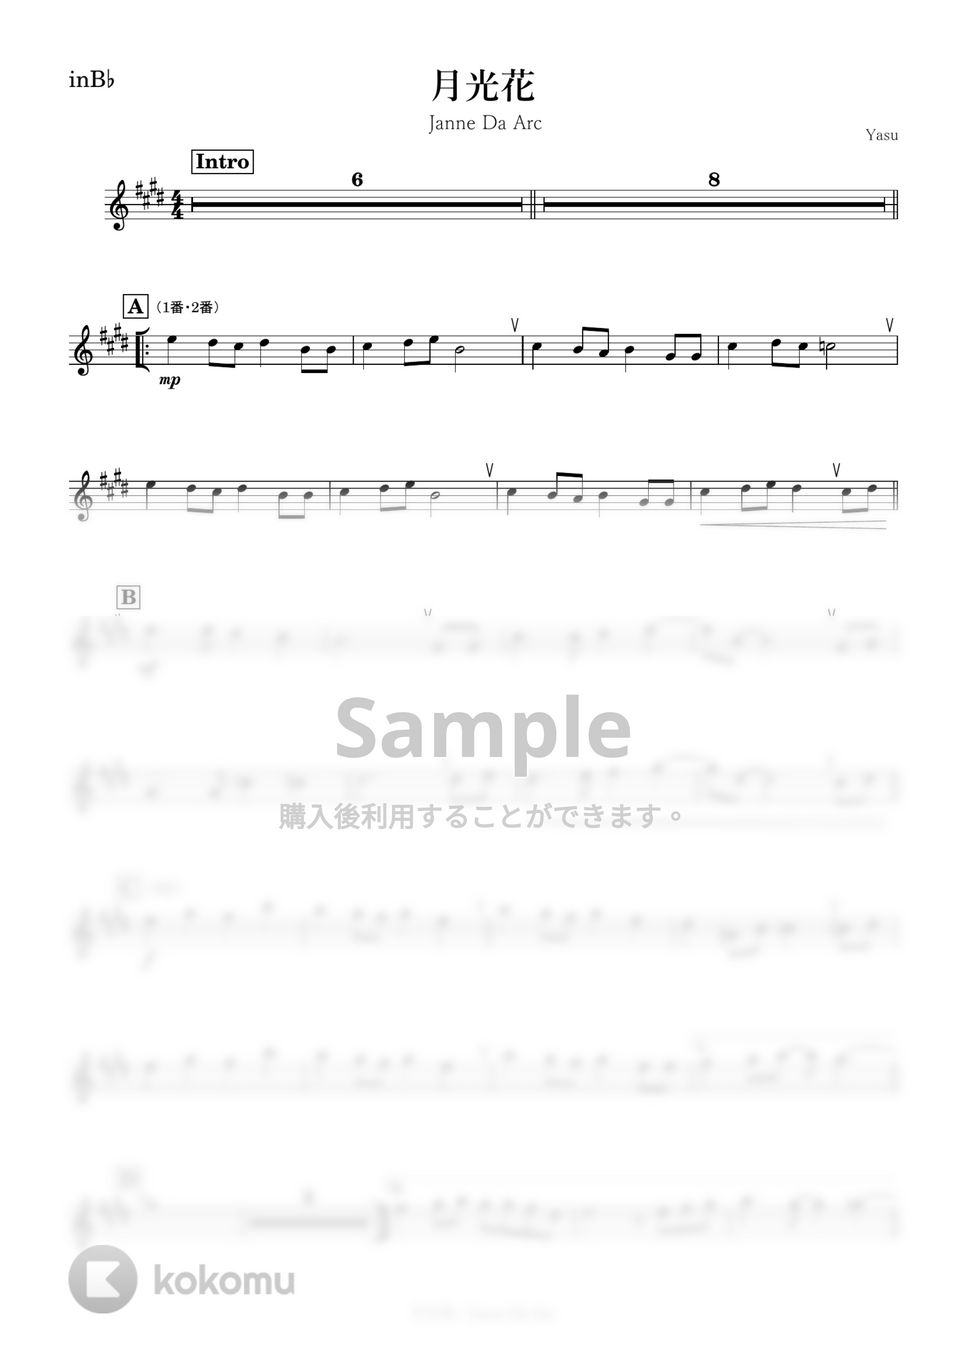 Janne Da Arc - 月光花 (B♭) by kanamusic